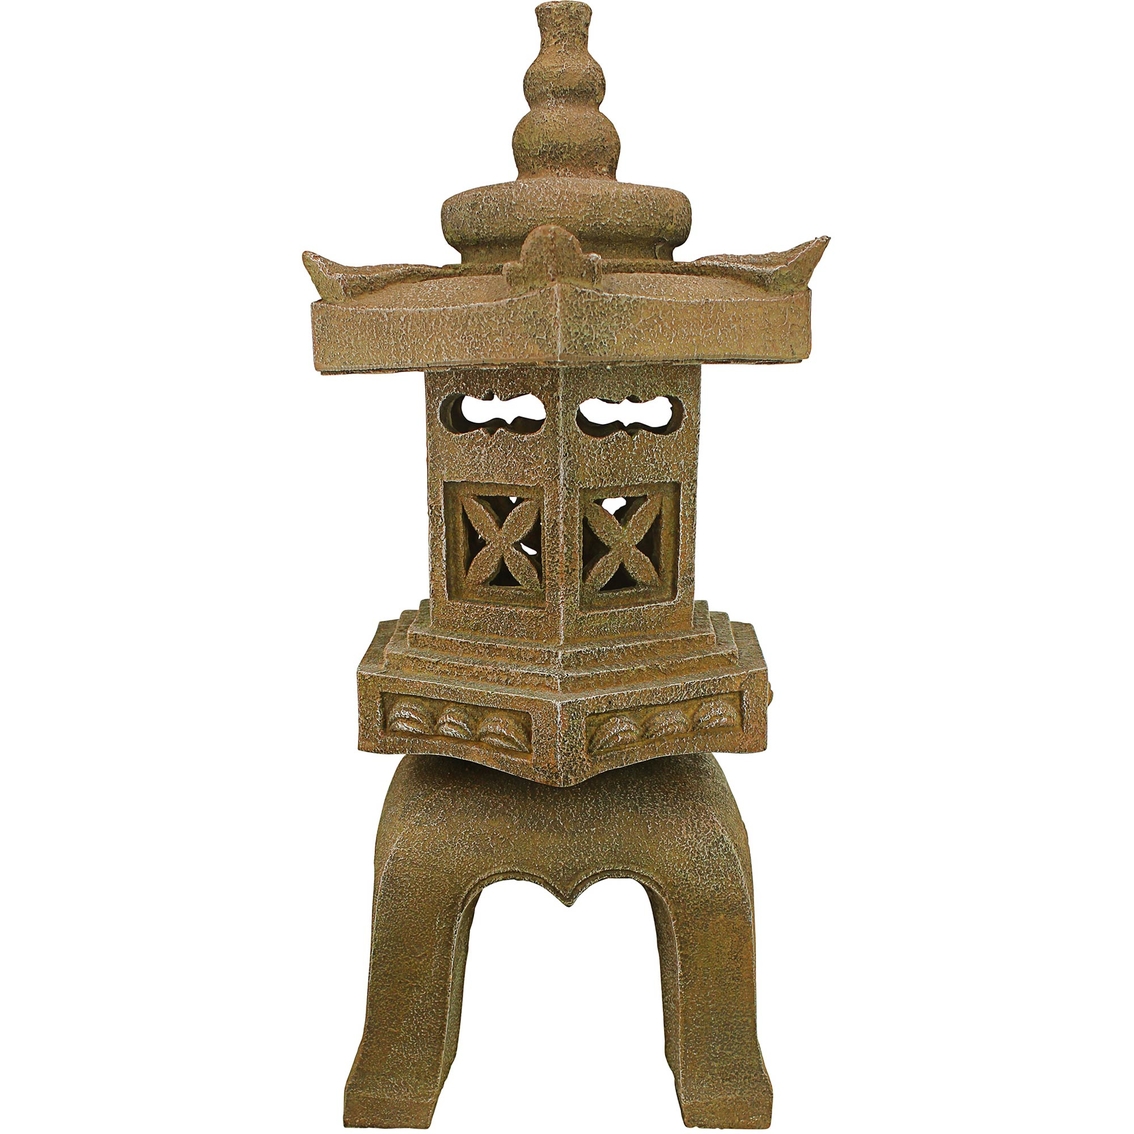 Design Toscano Sacred Pagoda Lantern Illuminated Statue - Image 2 of 4